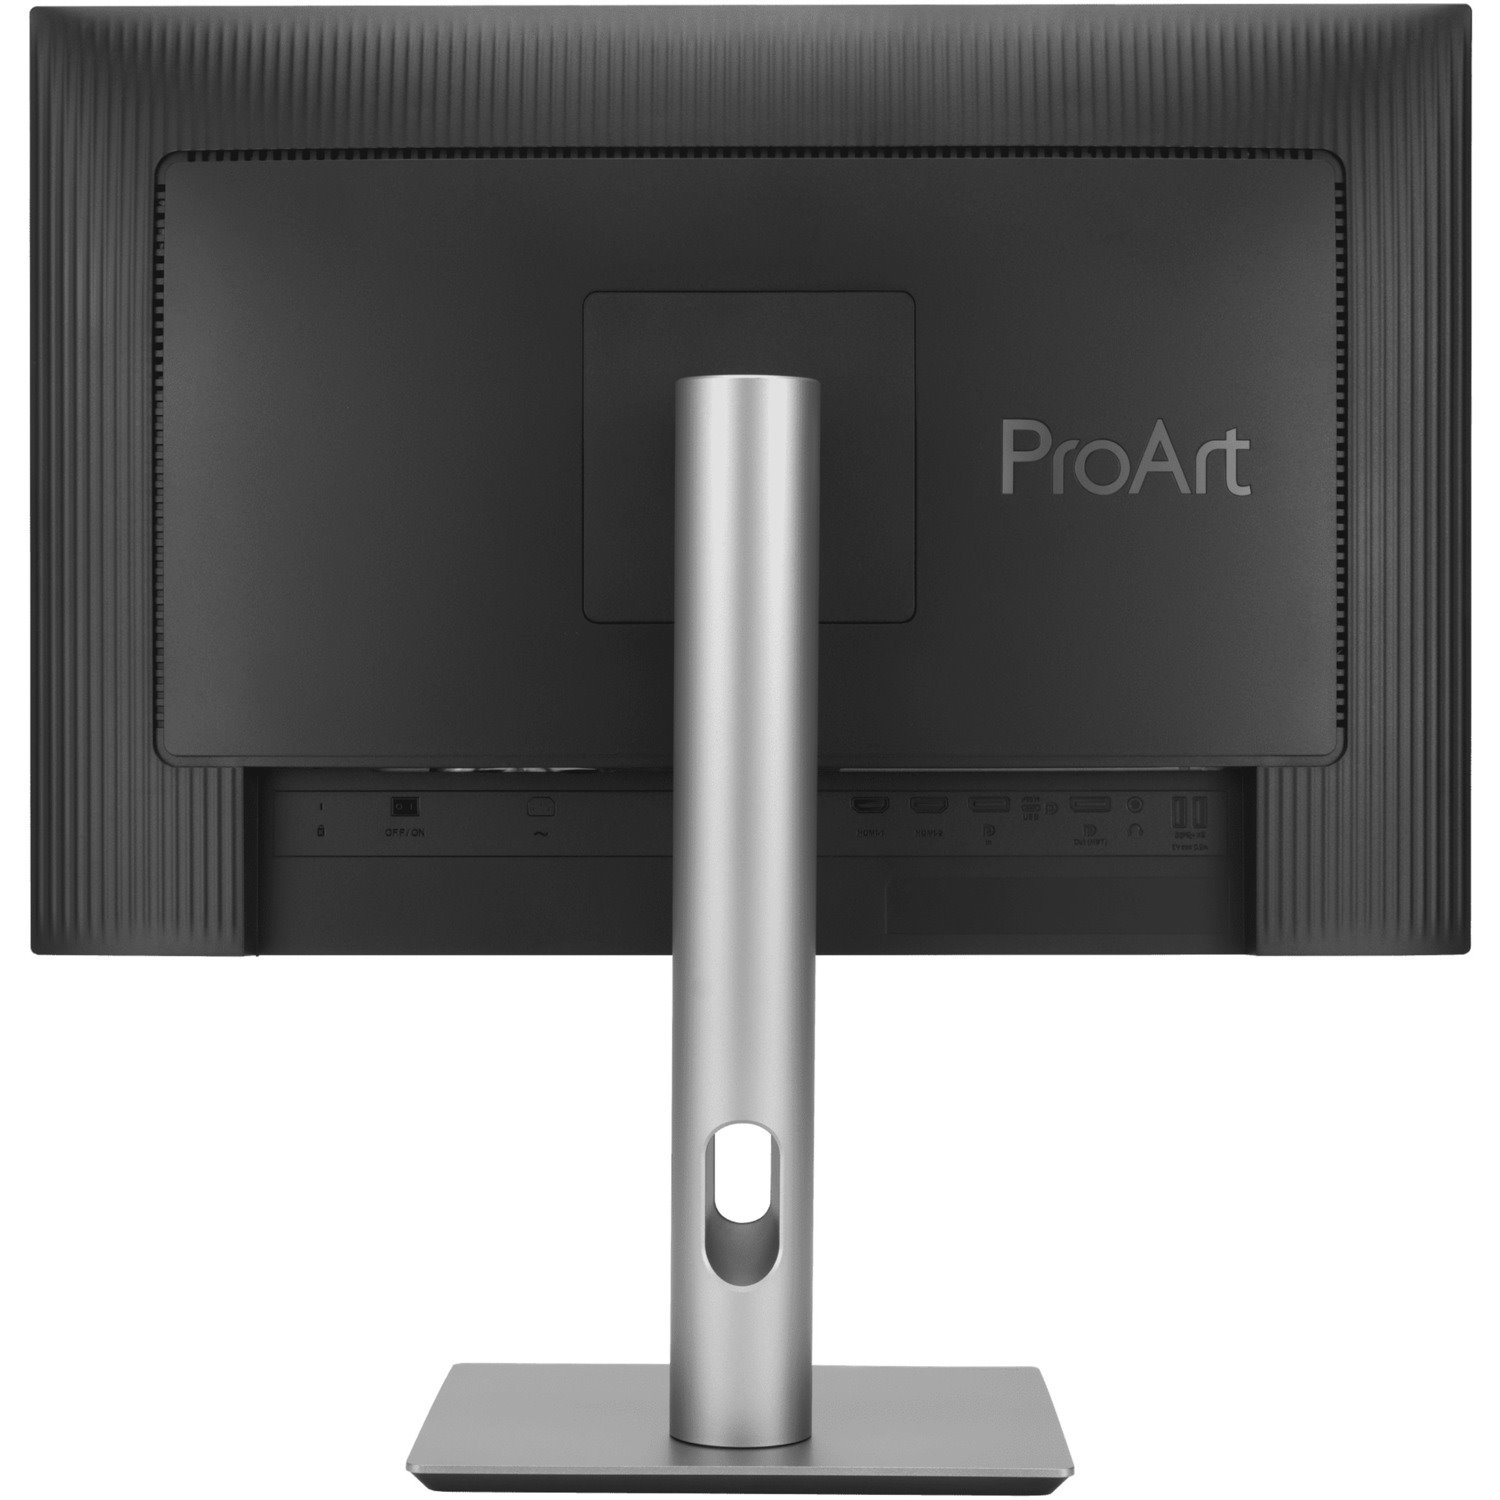 Asus ProArt PA248CRV 24.1" WUXGA LED LCD Monitor - 16:10 - Silver